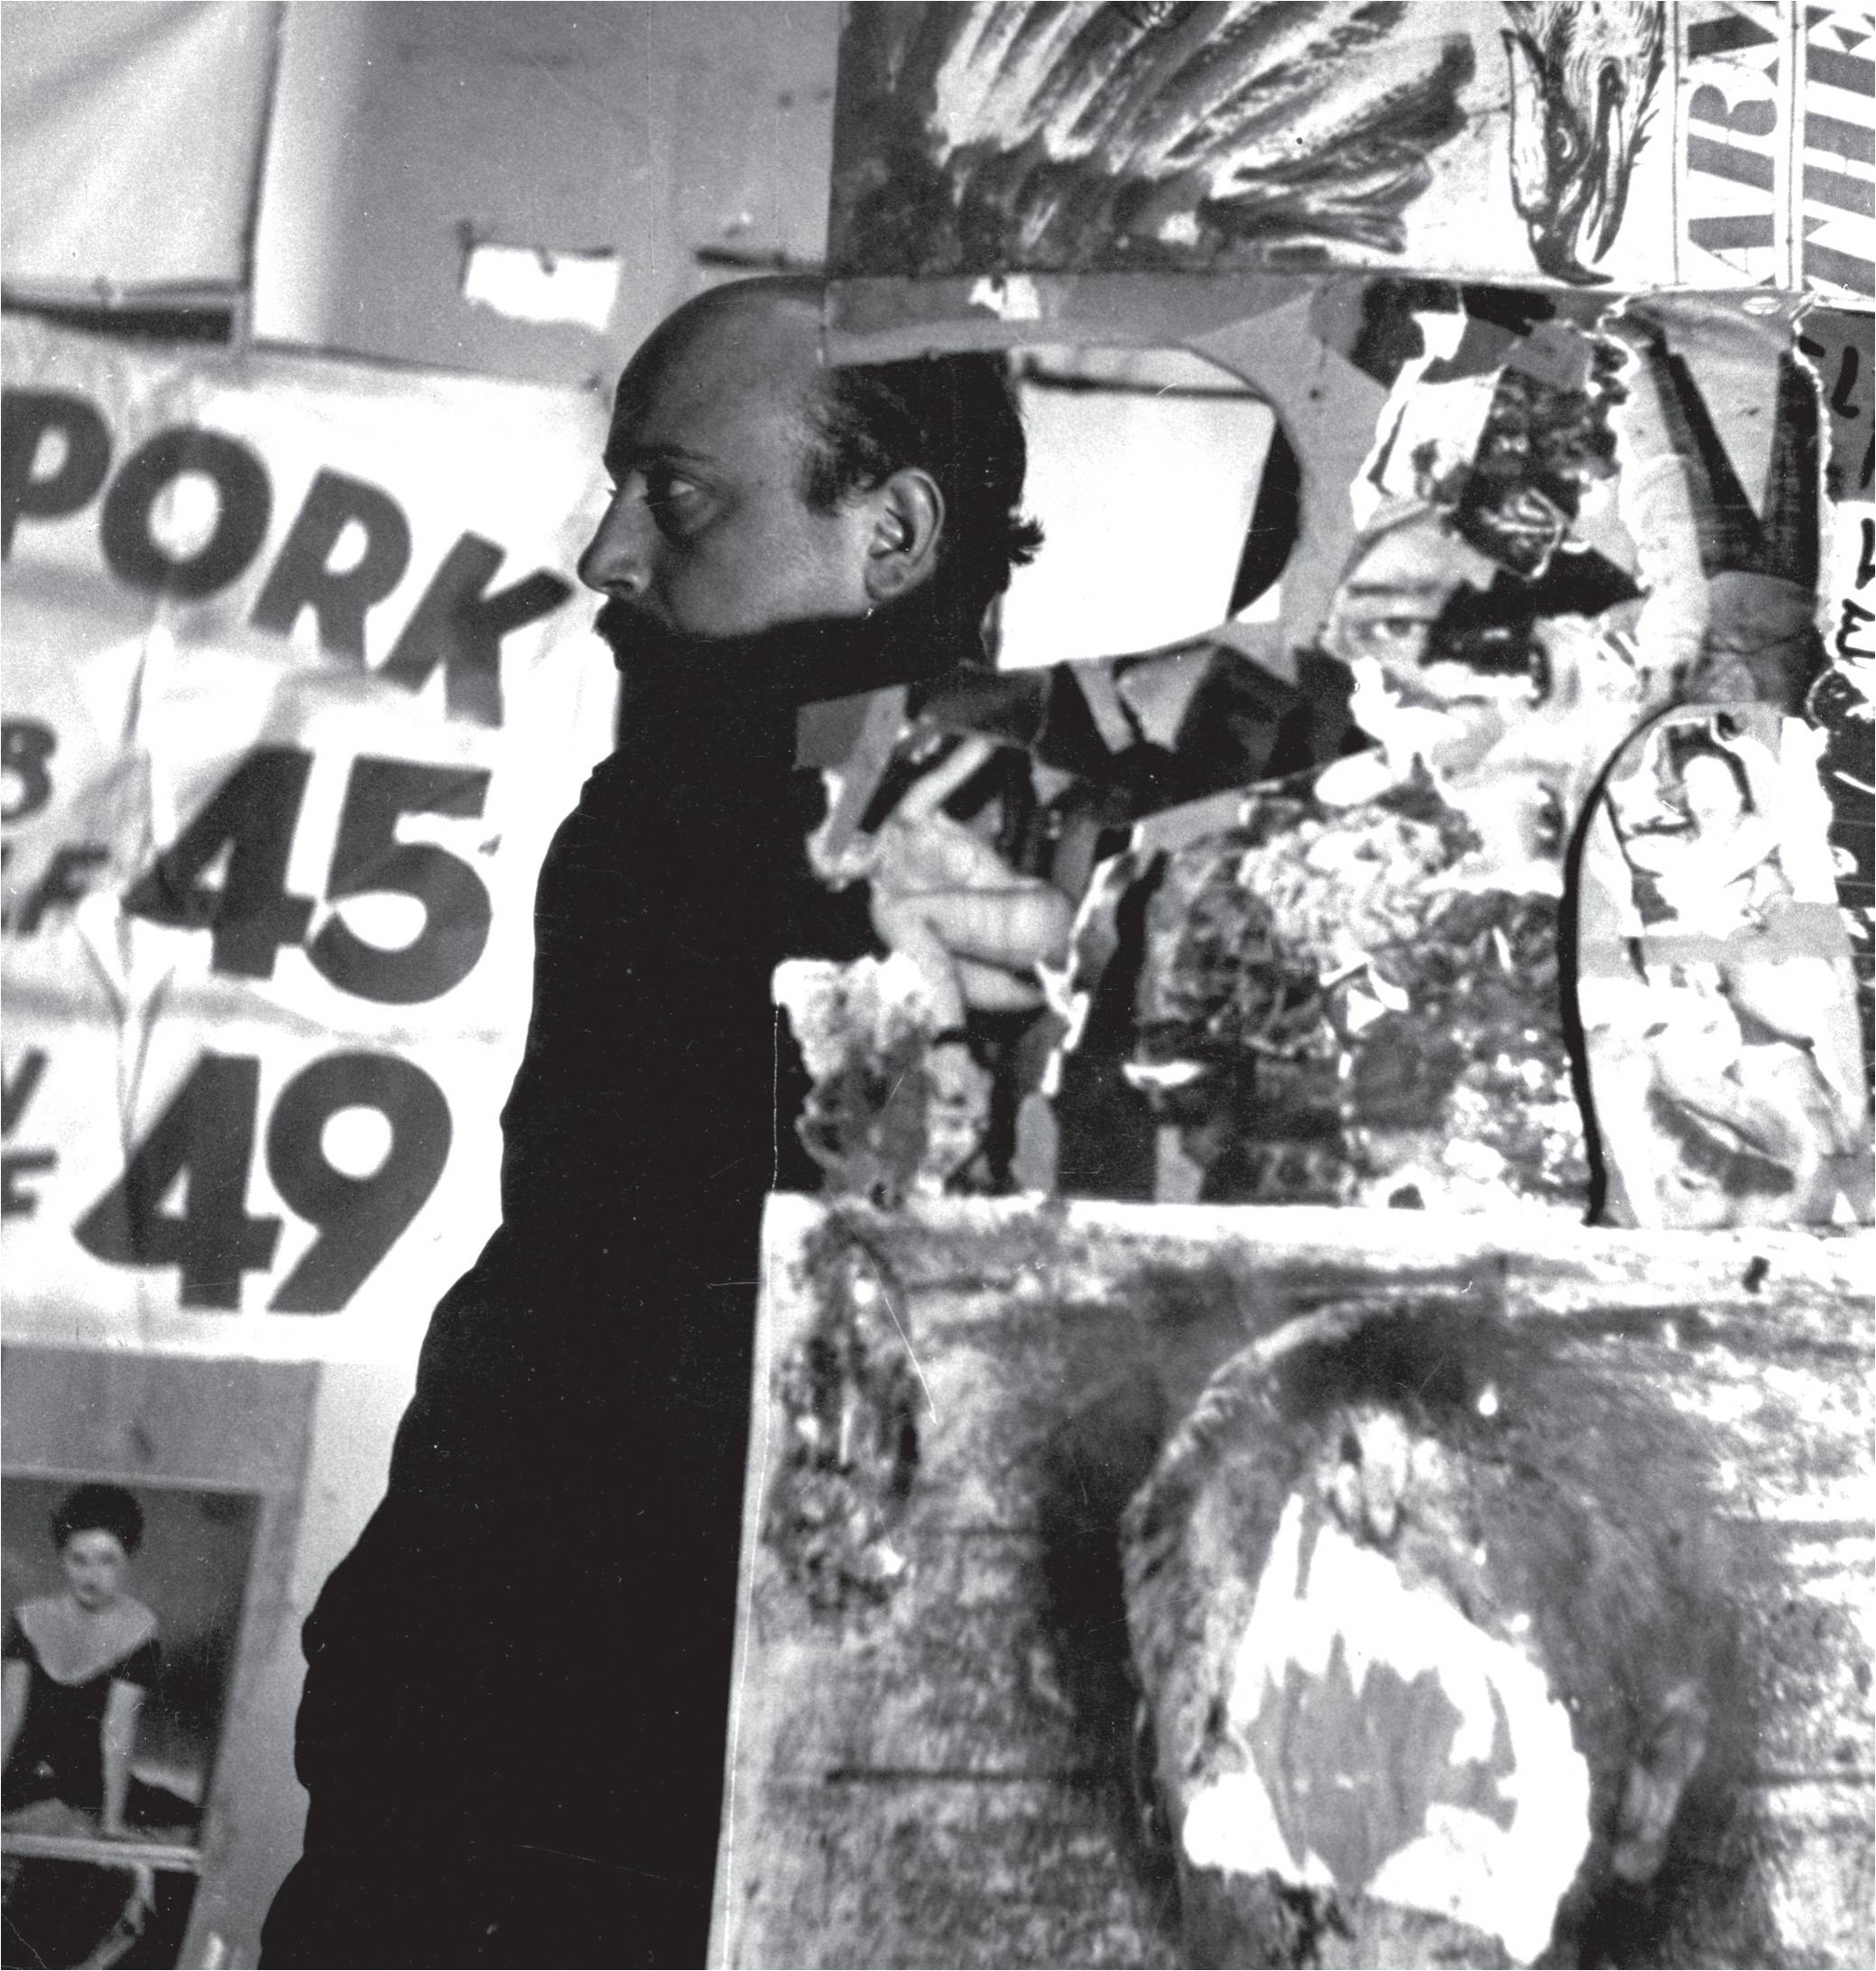 El arte de Boris Lurie: tras la sombra del nazismo y la sociedad de consumo